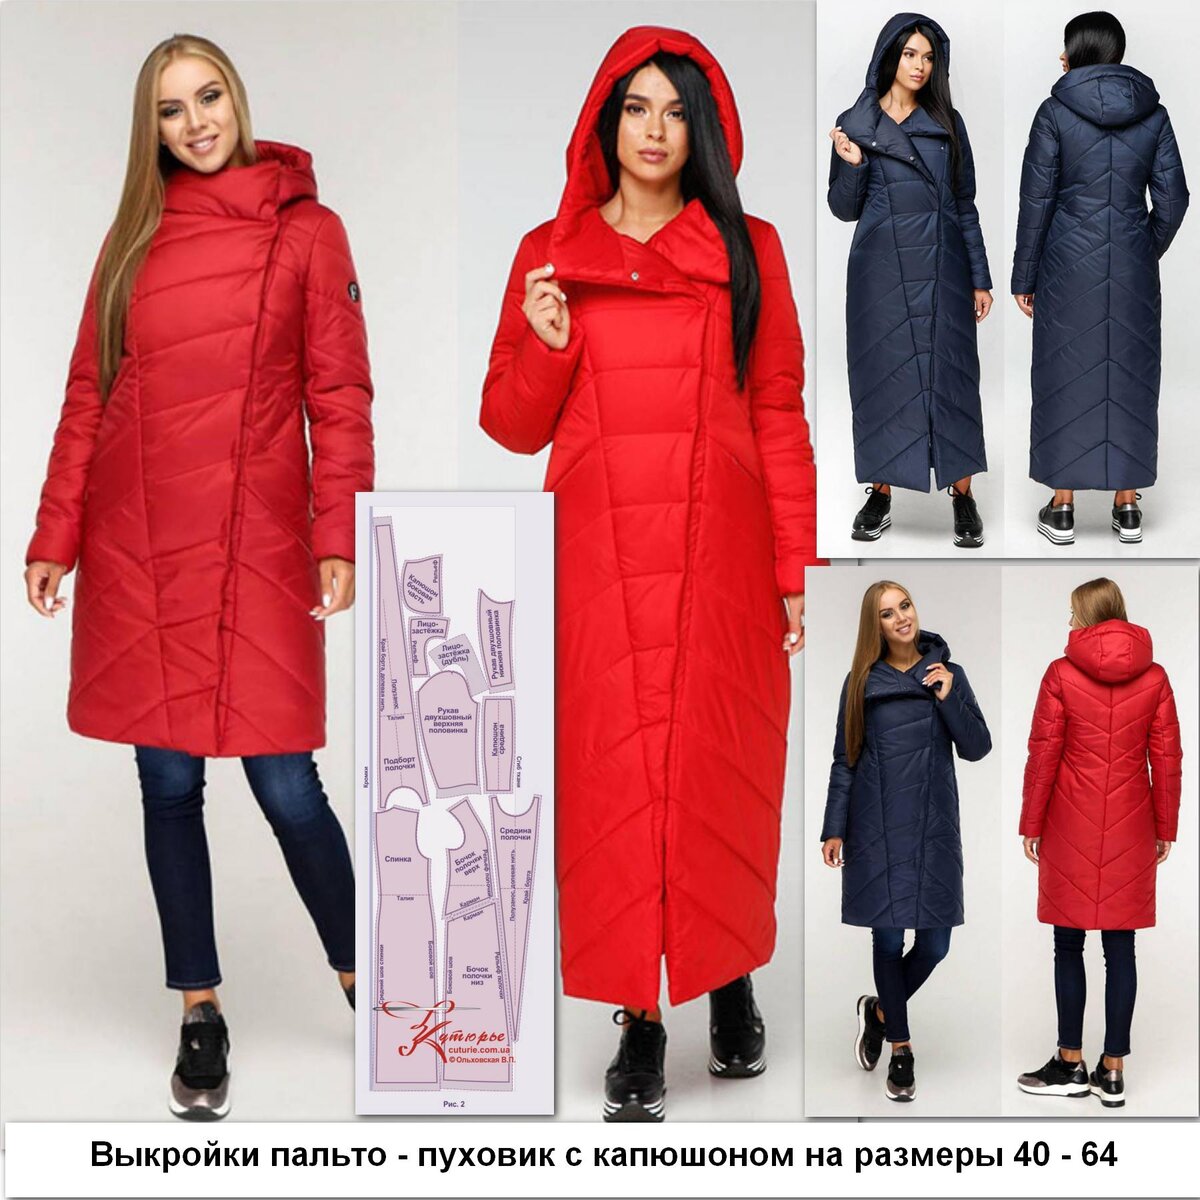 Пошив мужских пальто в Москве